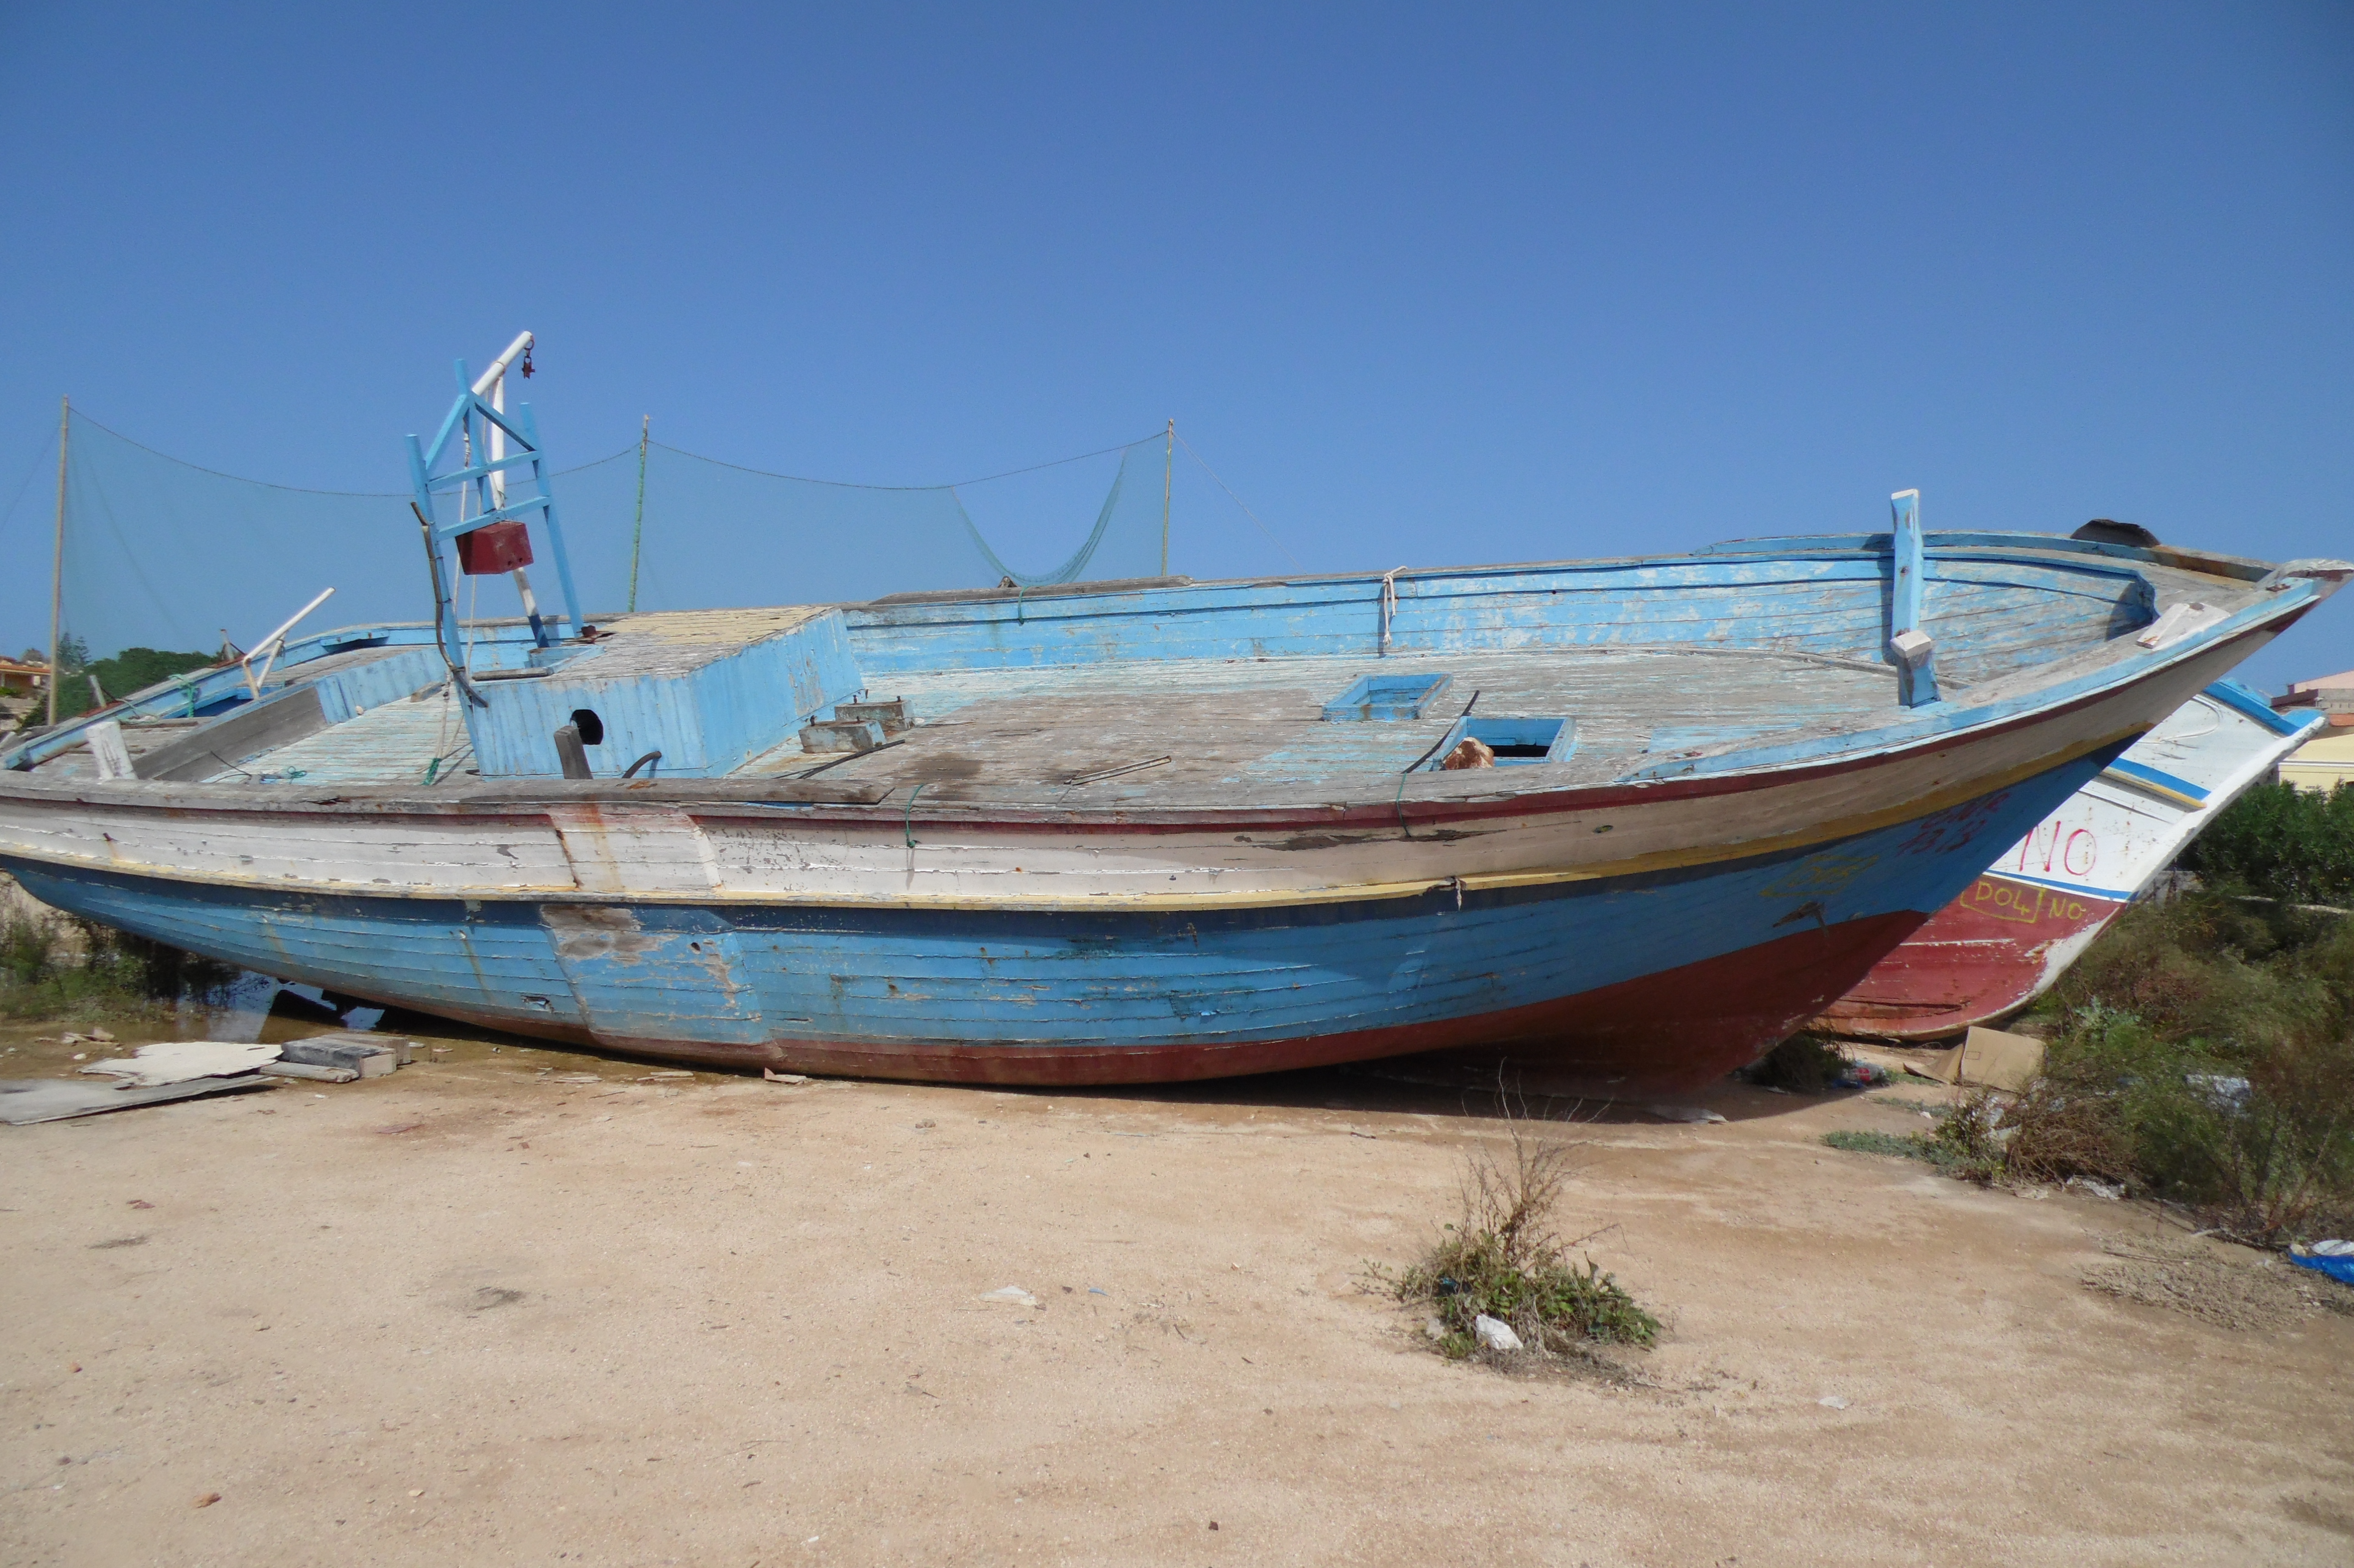 Verità, giustizia e memoria. Per Lampedusa